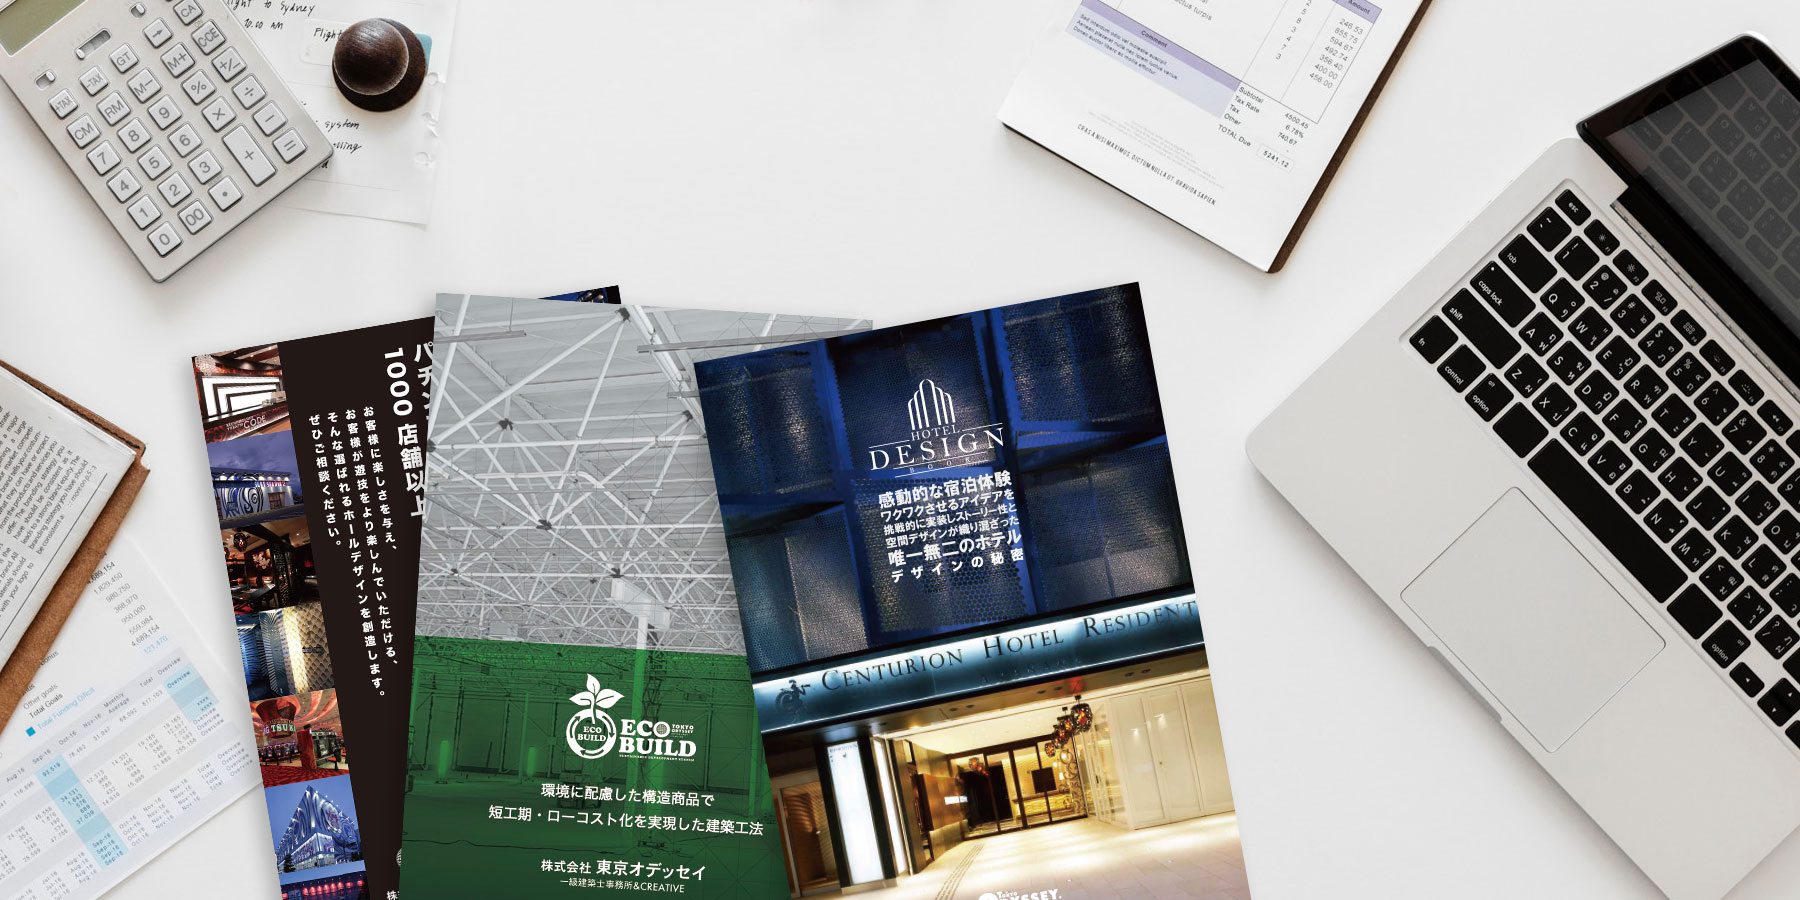 連載004　商業という経済を支える場を いかに企画しデザインしていくのか。 ホテルを中心にデザイン活動する 東京オデッセイのデザインの流儀について ご説明いたします